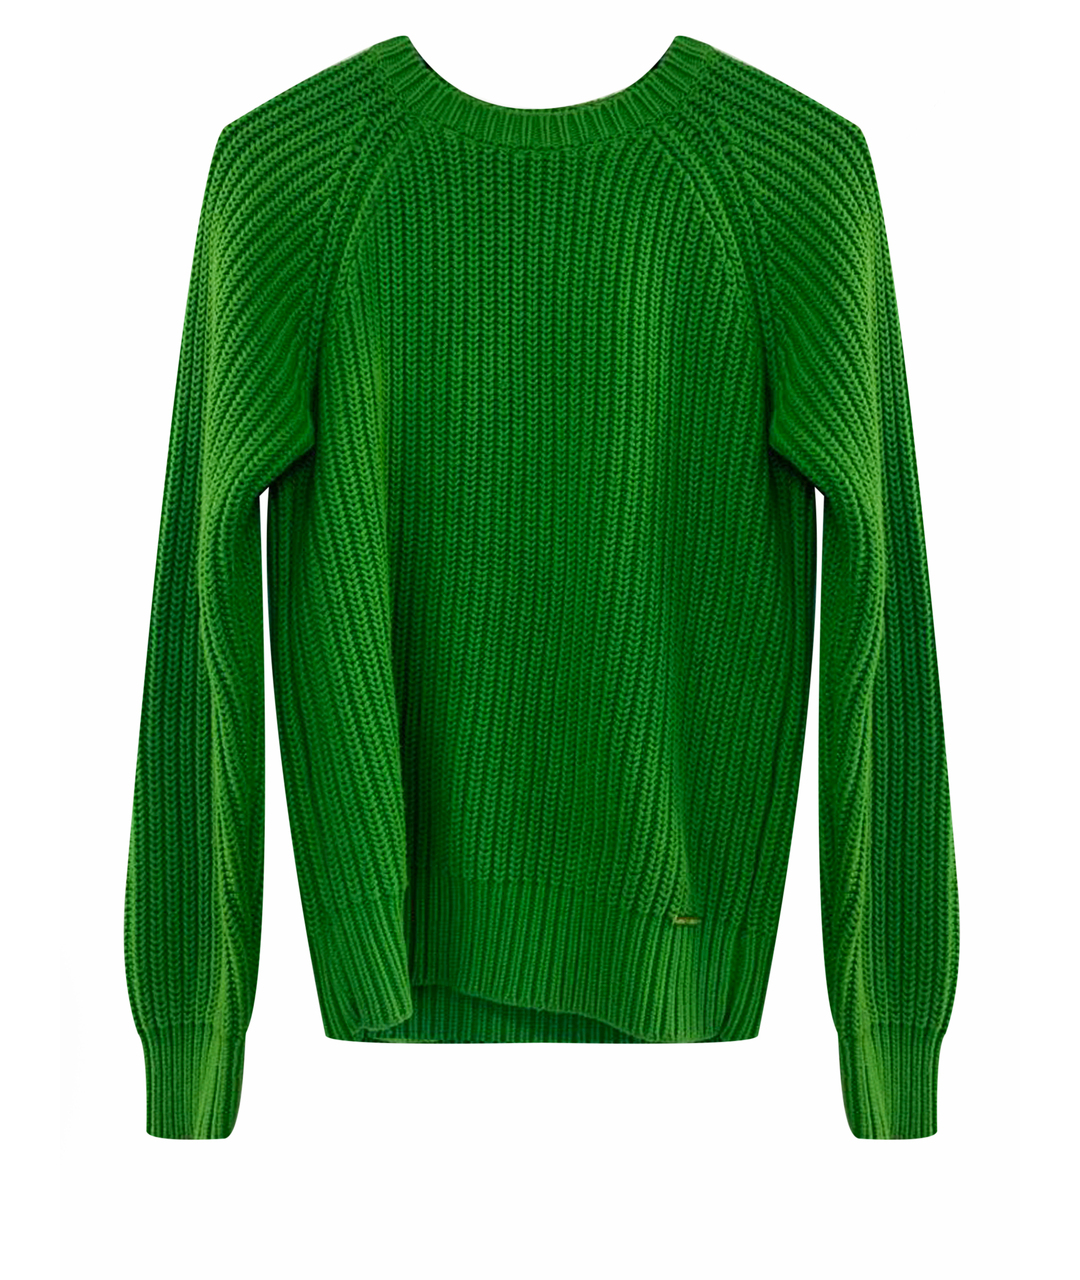 MICHAEL KORS Зеленый хлопковый джемпер / свитер, фото 1